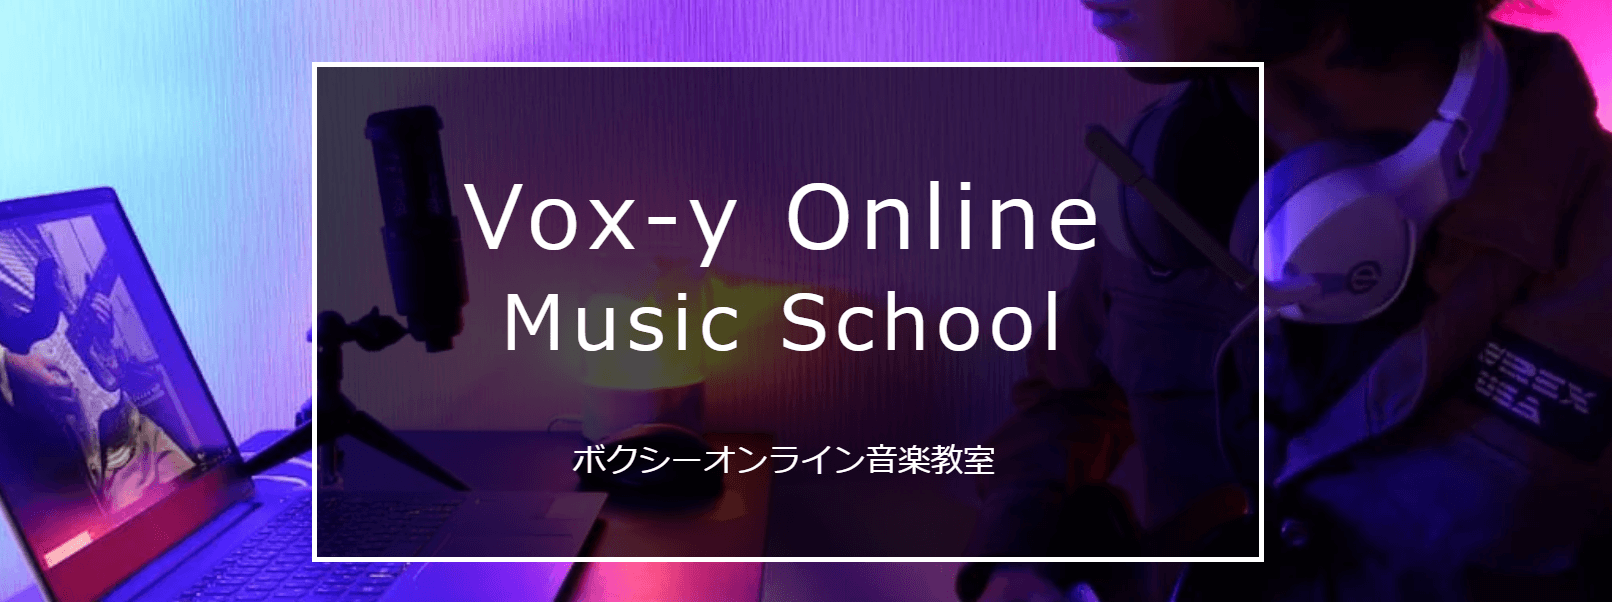 Vox-yオンライン音楽教室